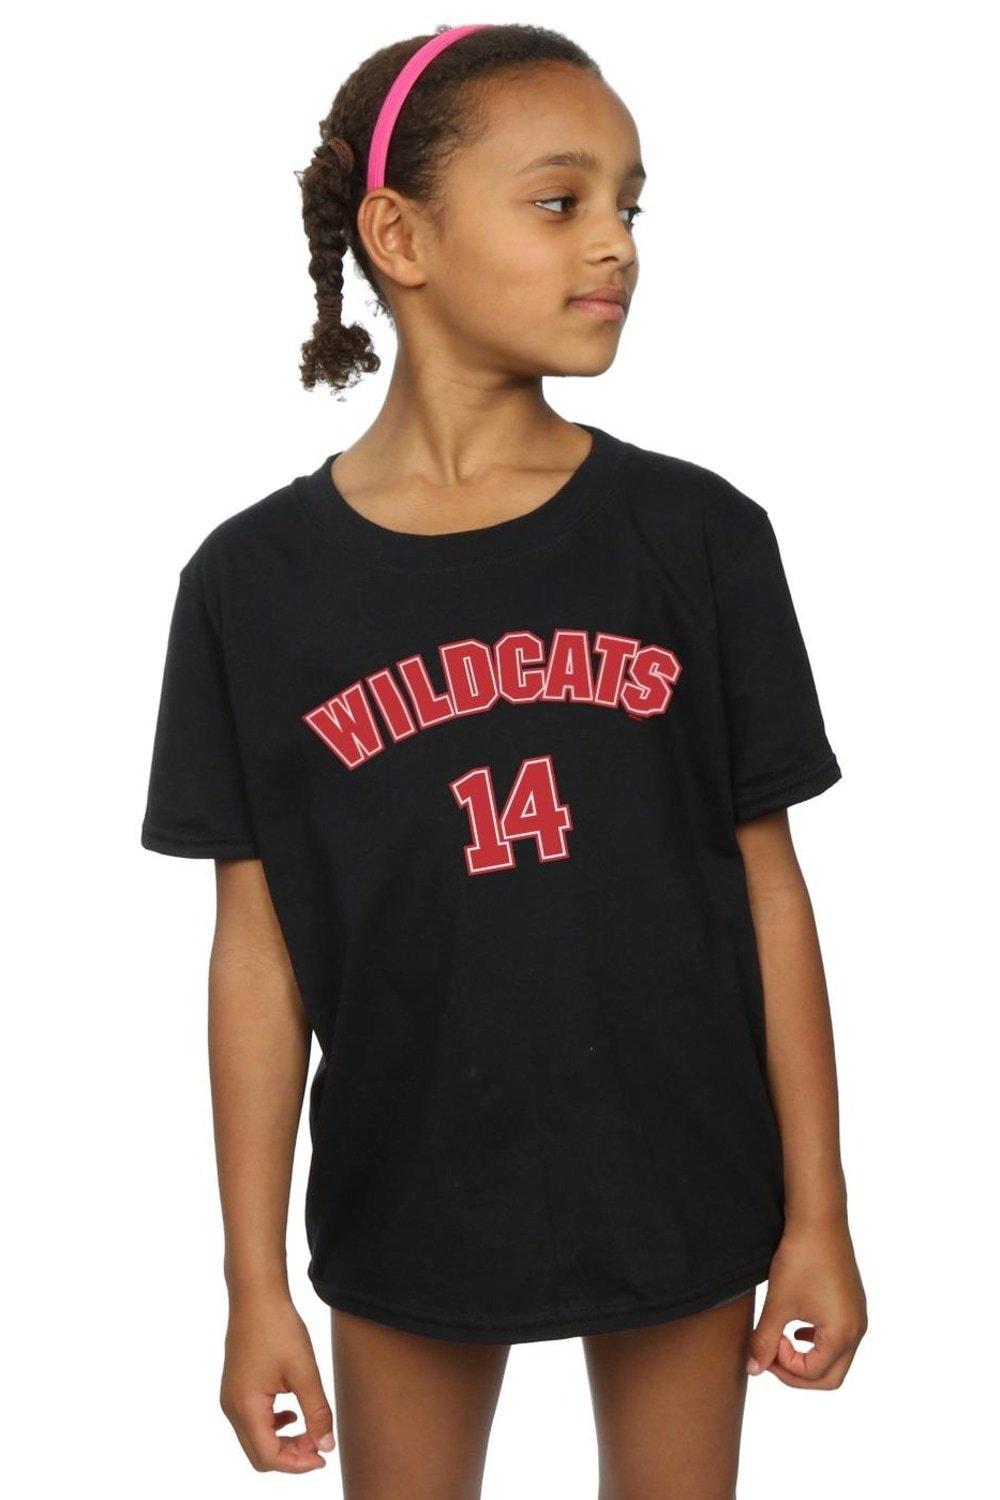 High School Musical The Musical Wildcats 14 Cotton T-Shirt